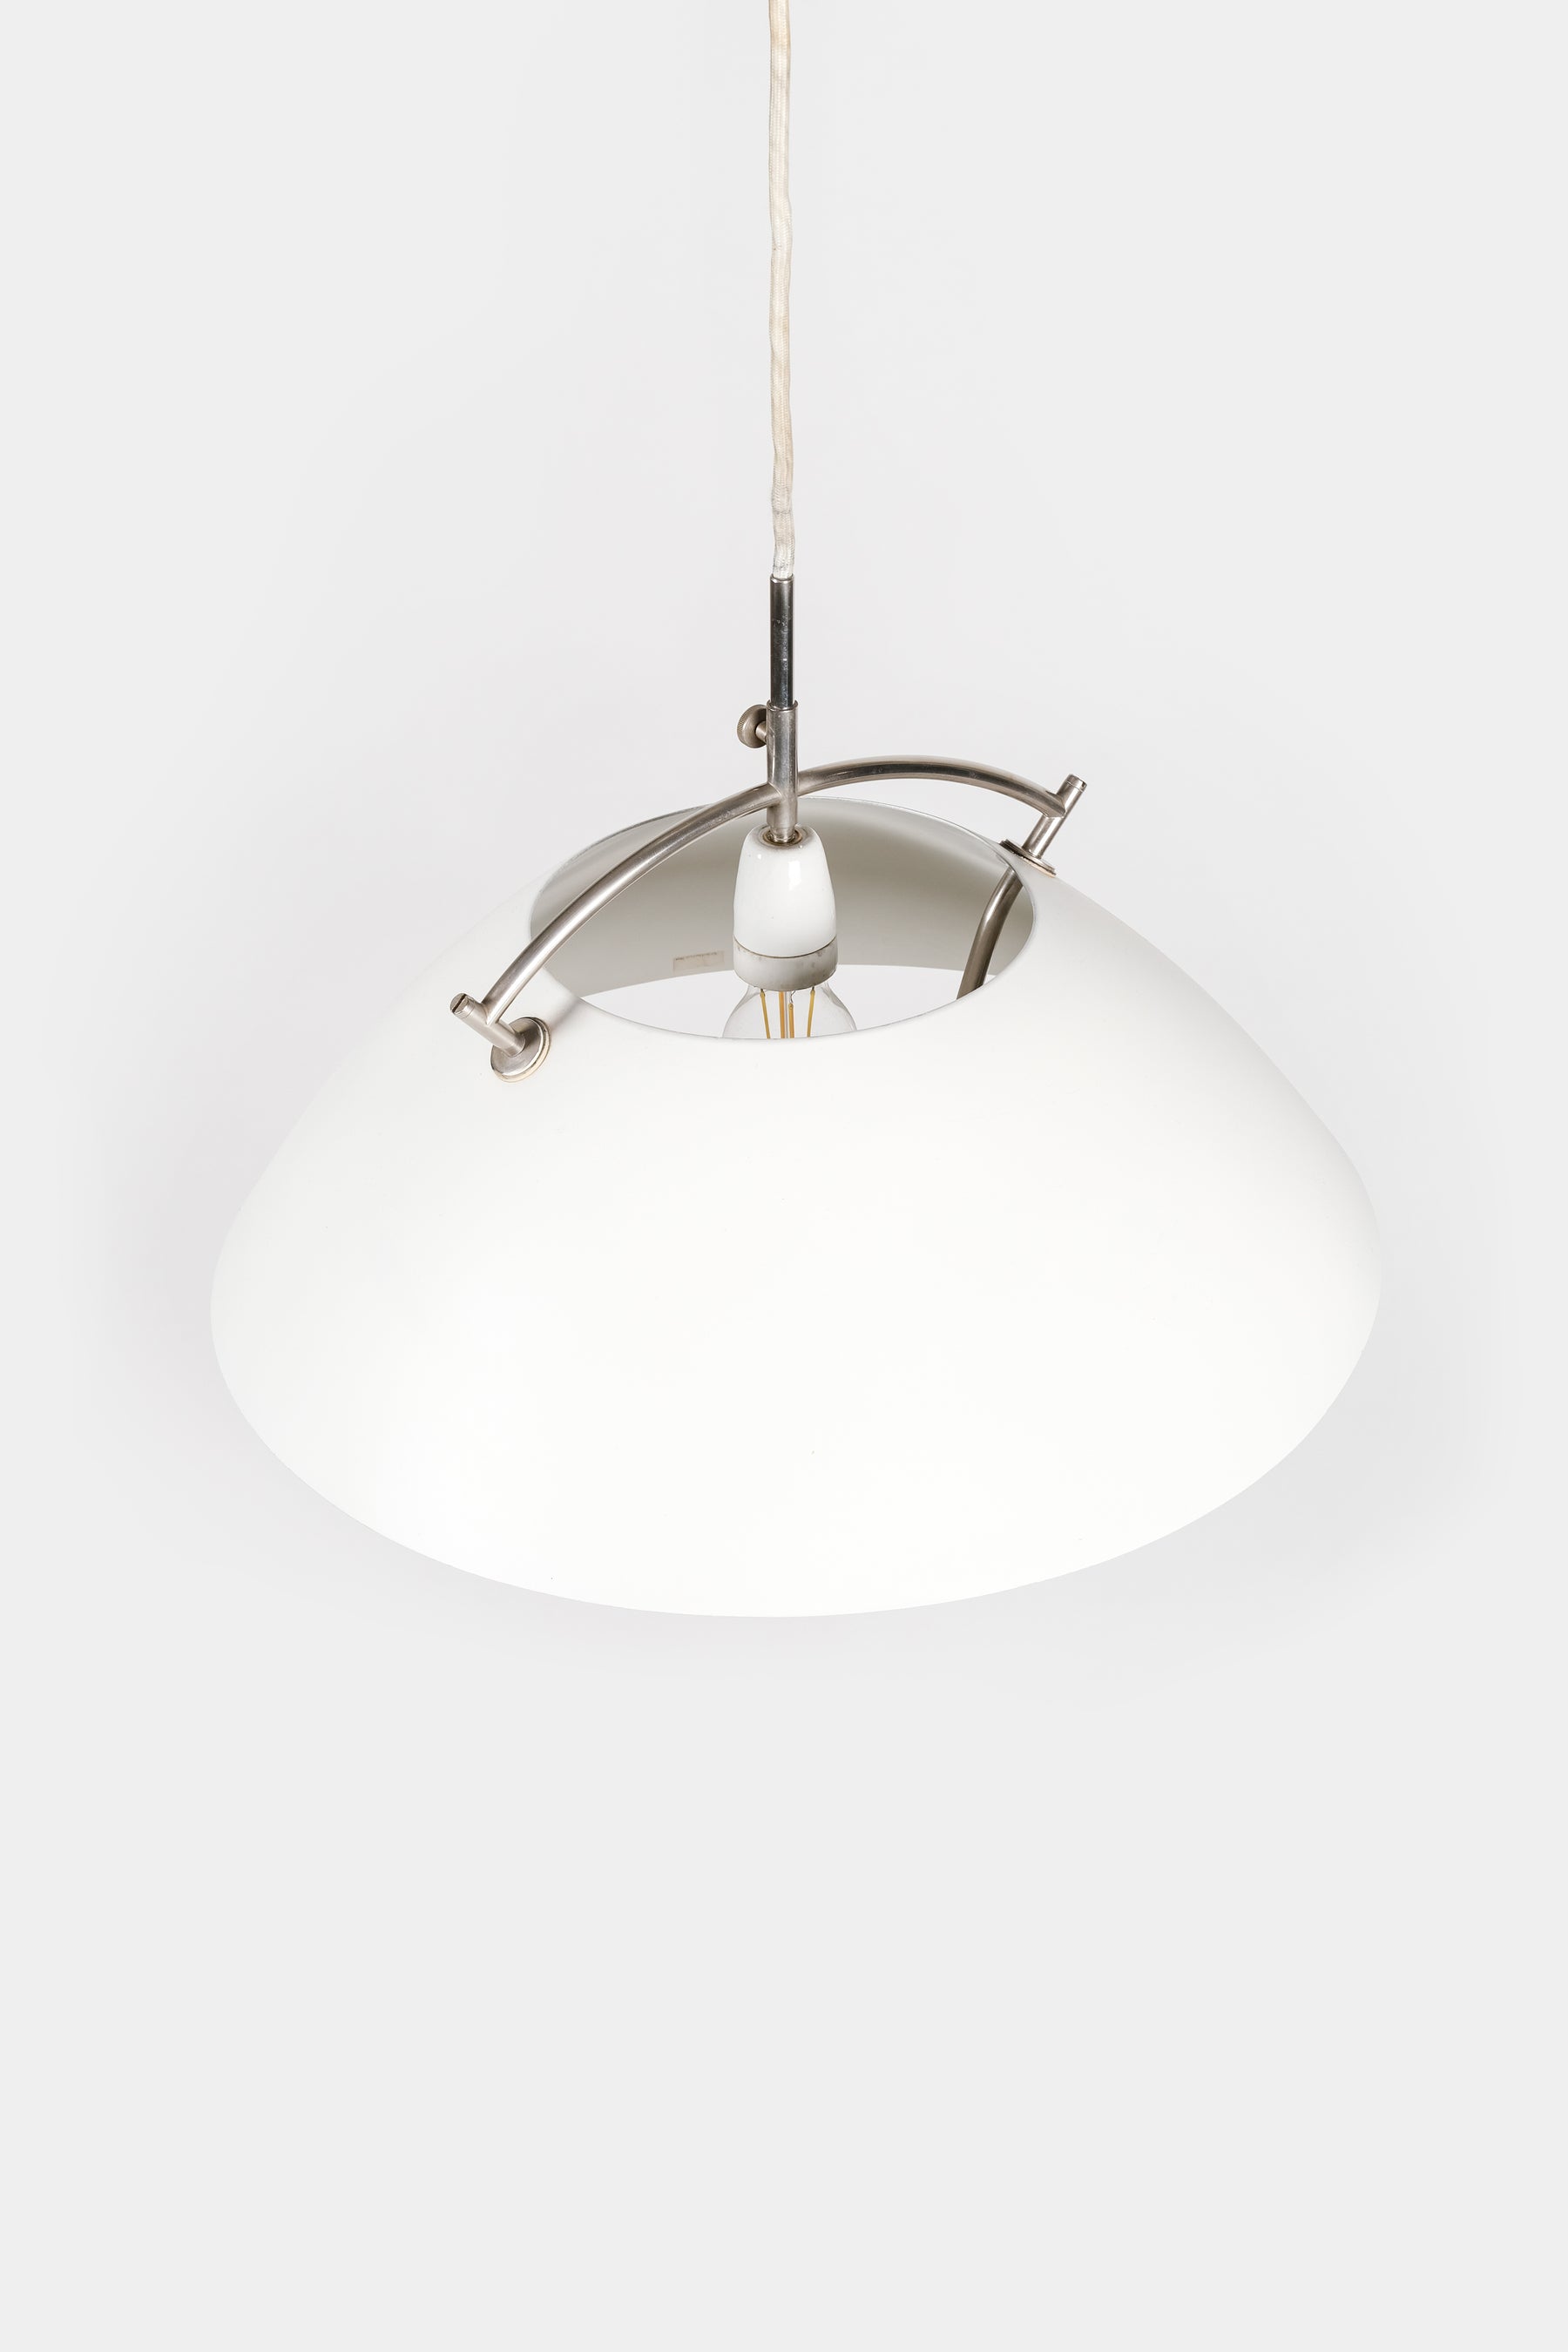 Hans Wegner, Ceiling Lamp JH 604, Louis Poulsen, Denmark, 60s